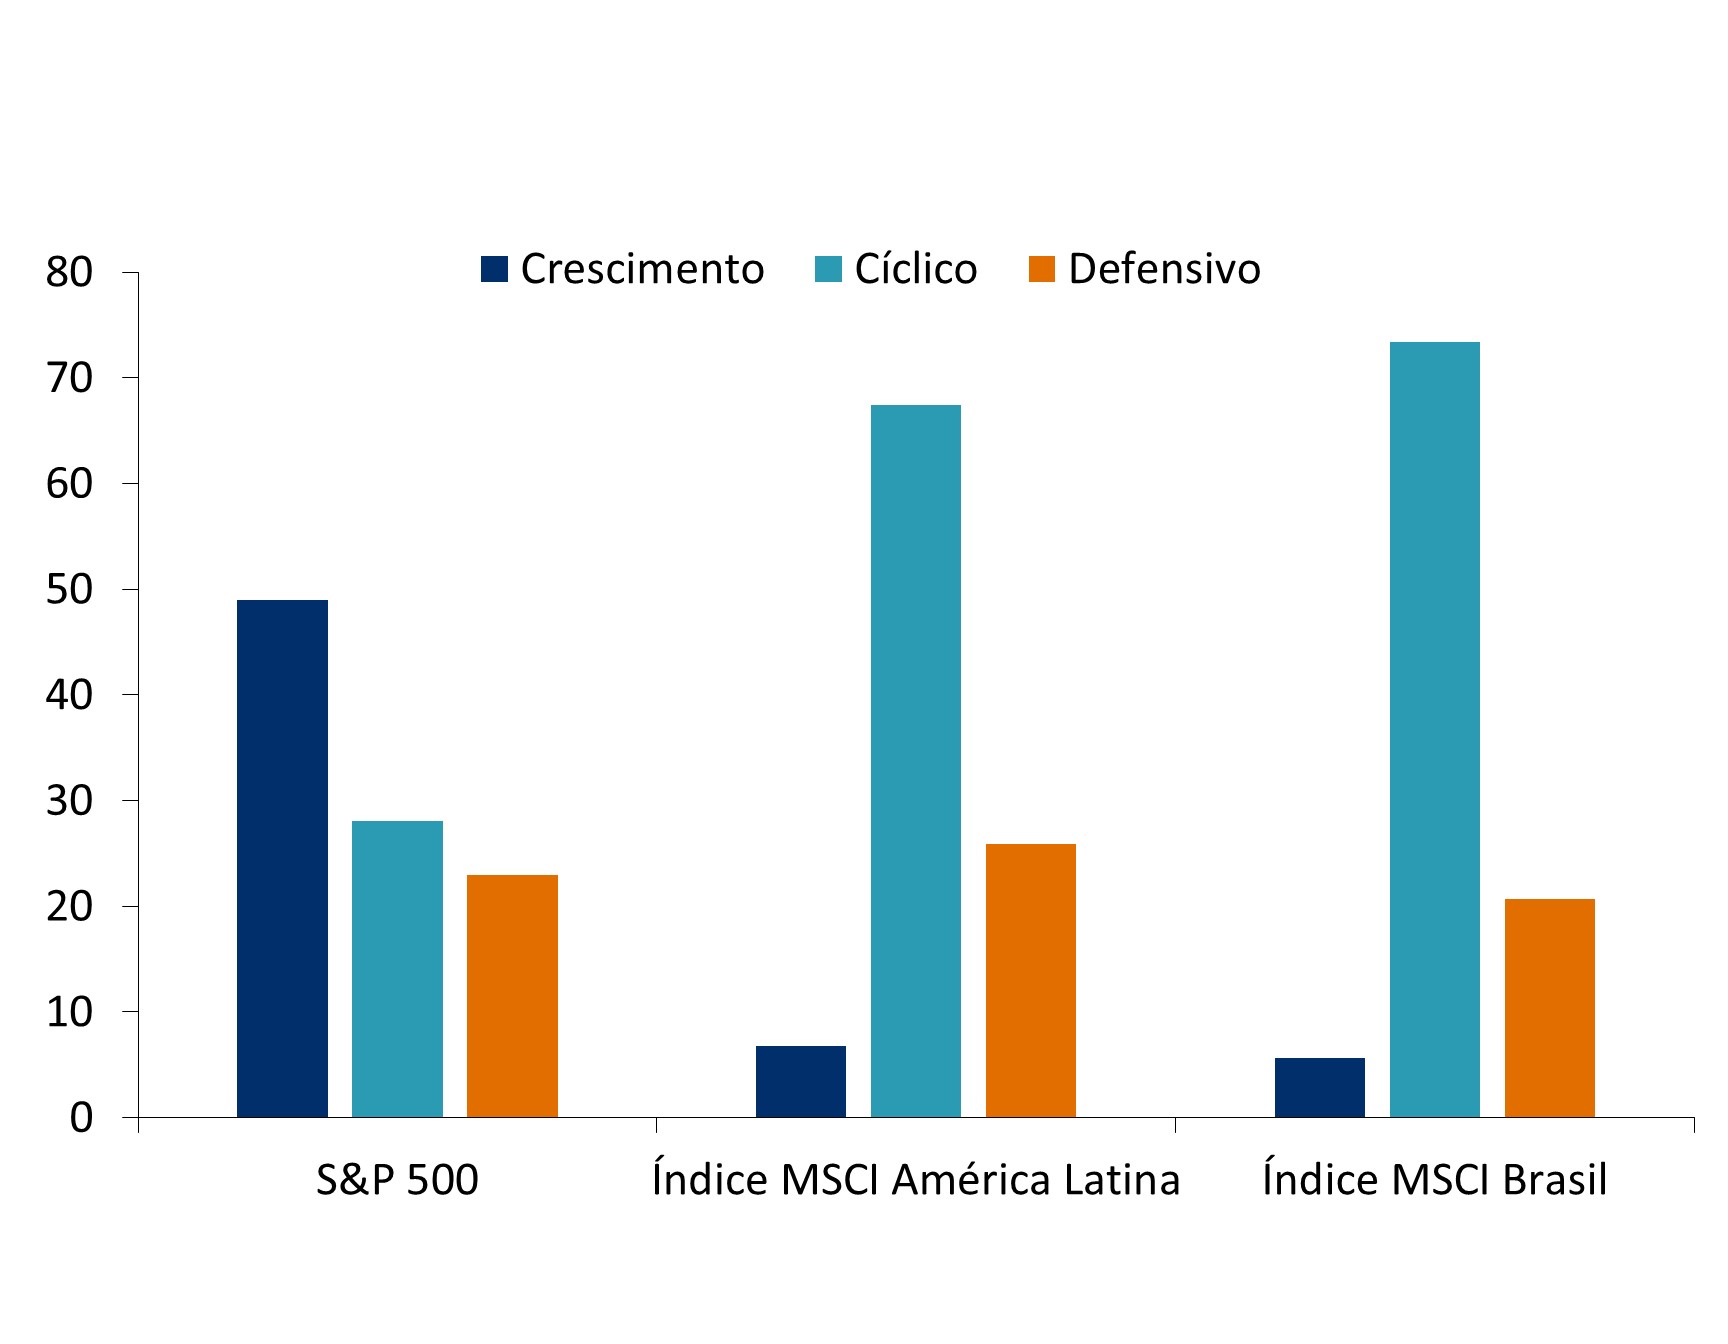 Este gráfico apresenta a composição dos mercados acionários considerando os setores de crescimento, cíclico e defensivo, no S&P 500, MSCI América Latina e MSCI Brasil.